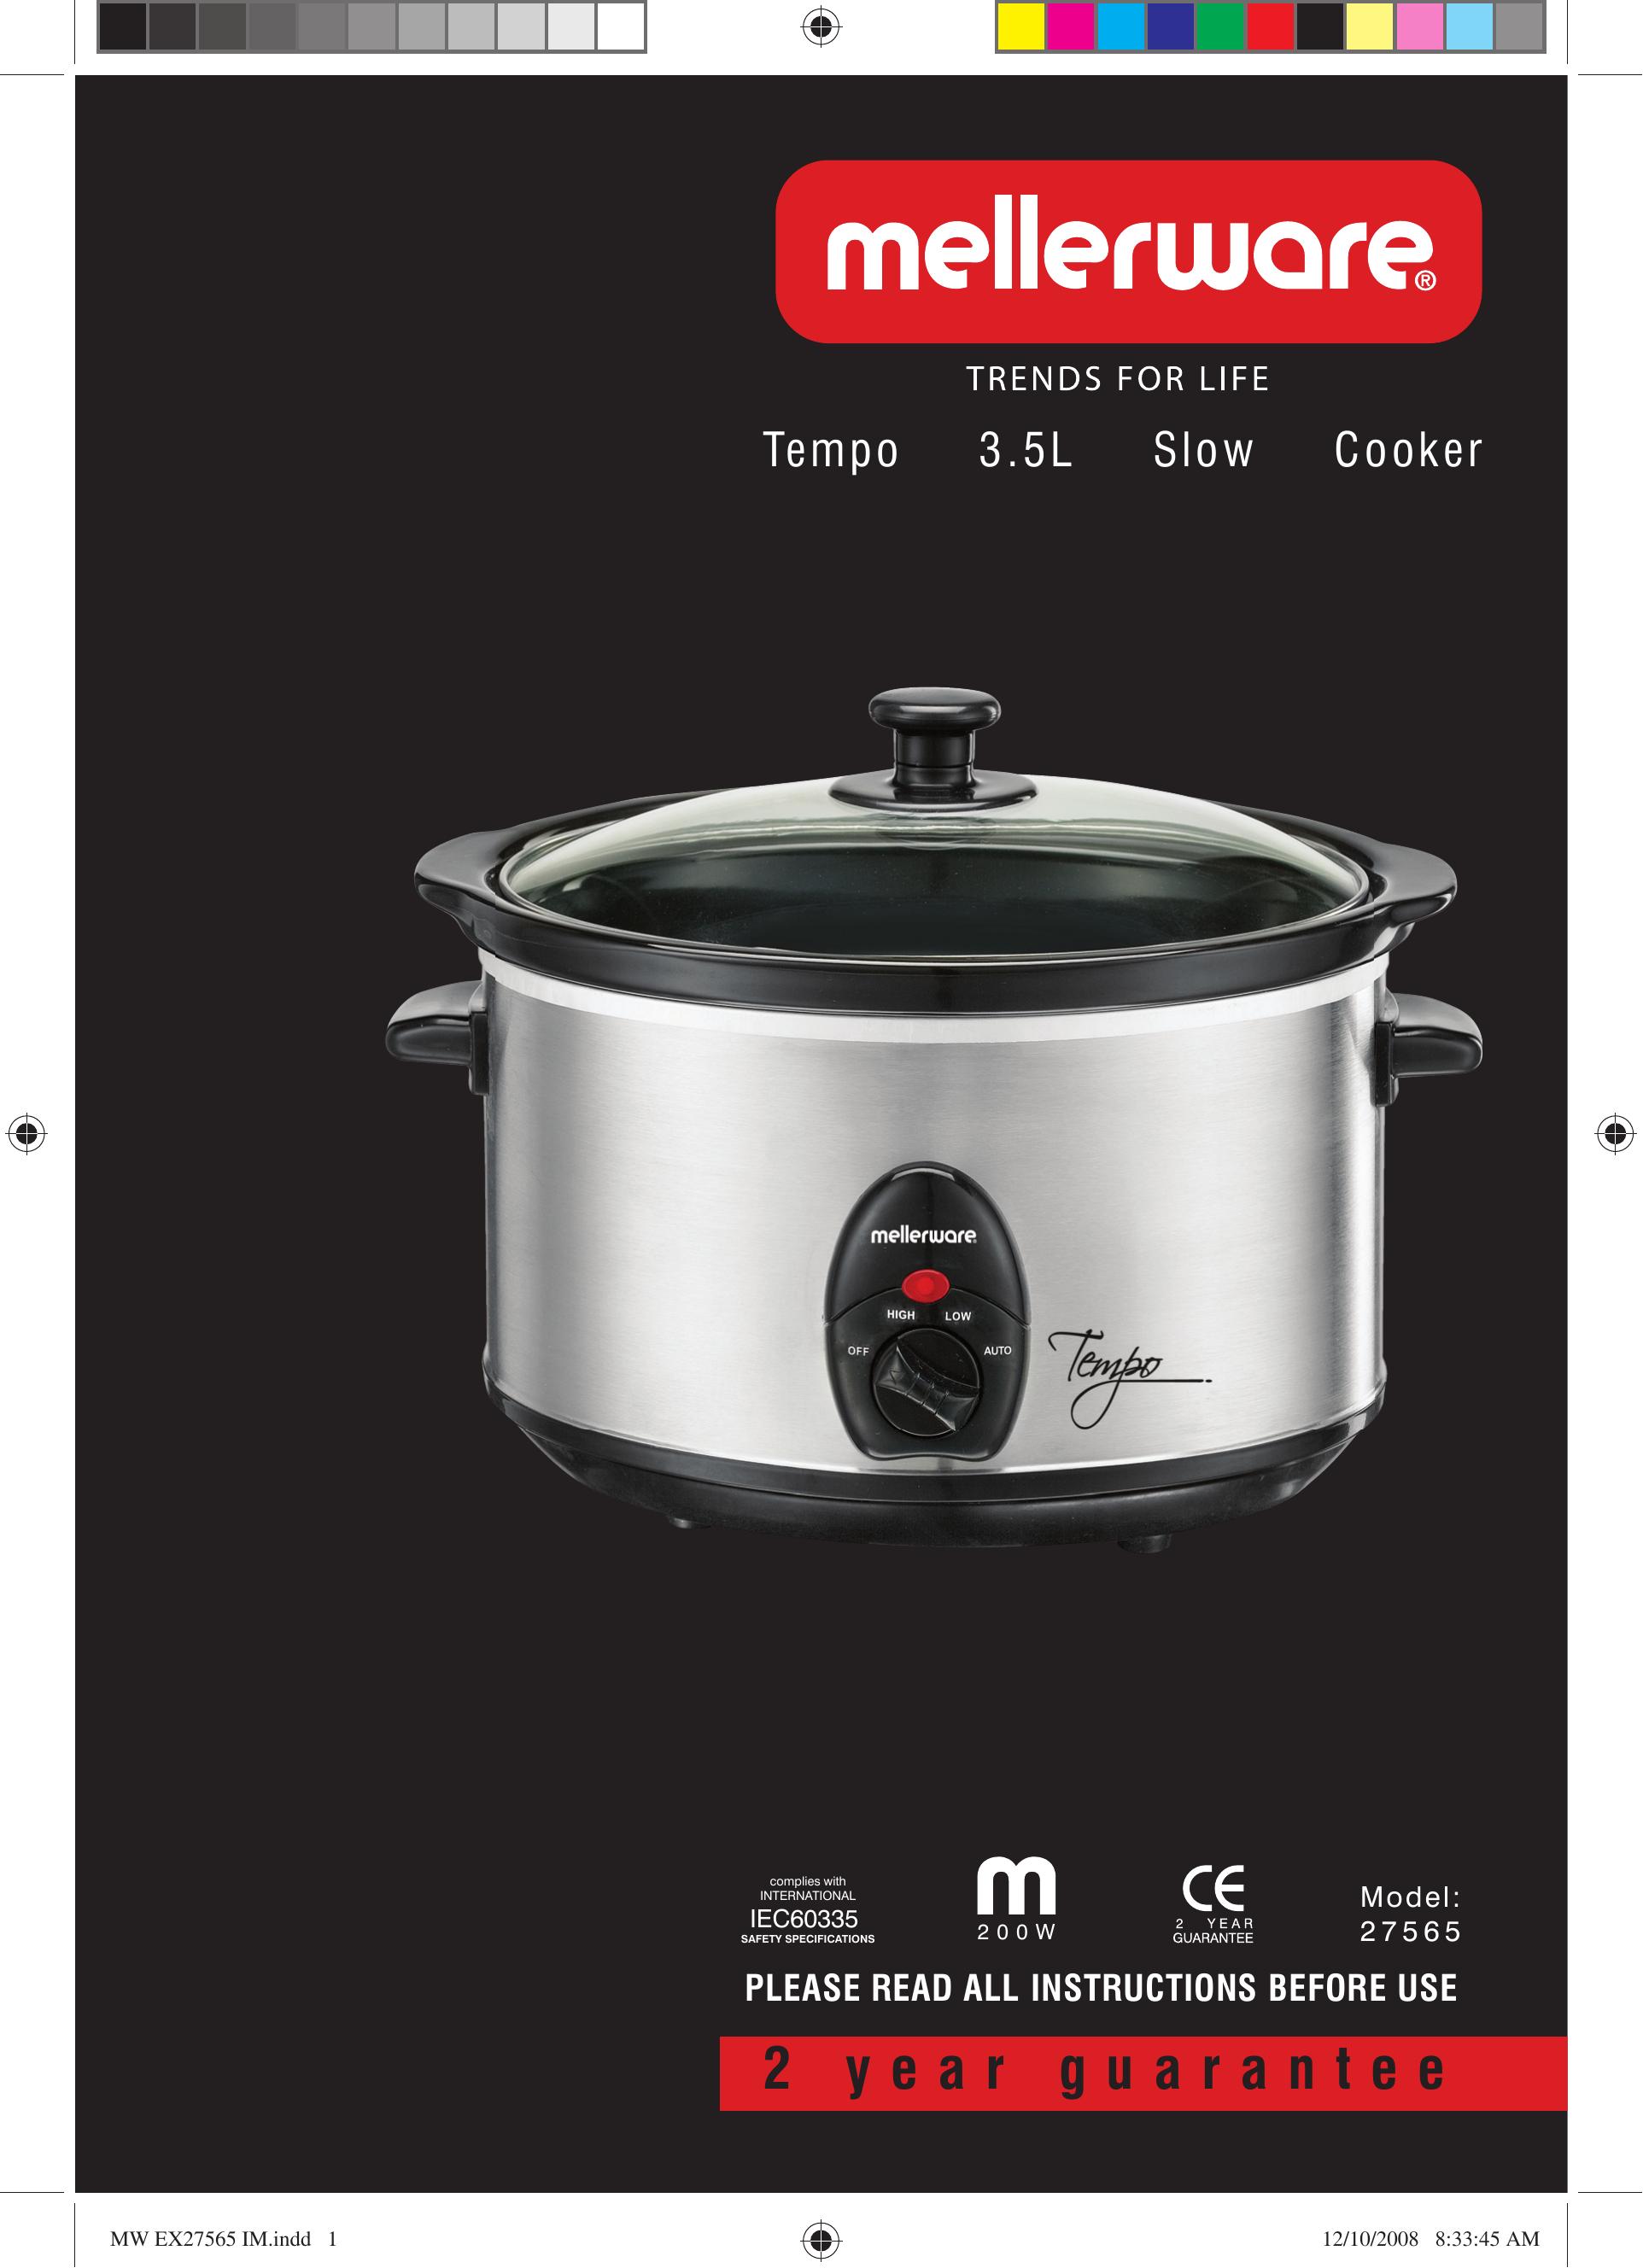 Mellerware 27565 Slow Cooker User Manual